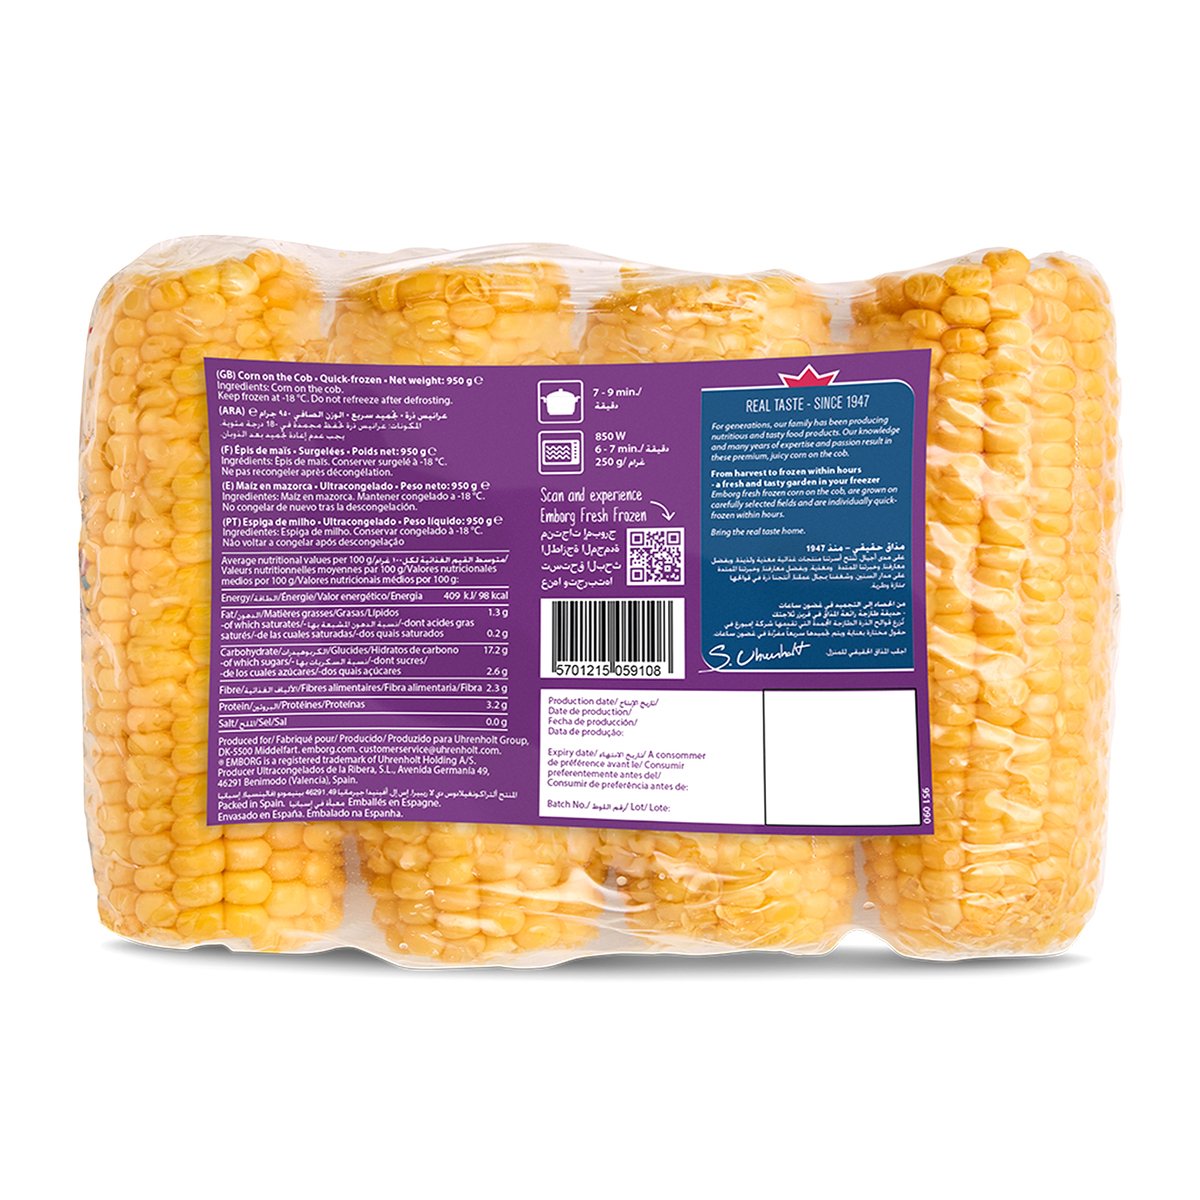 Emborg 4 Corn On The Cob 4 pcs 950 g